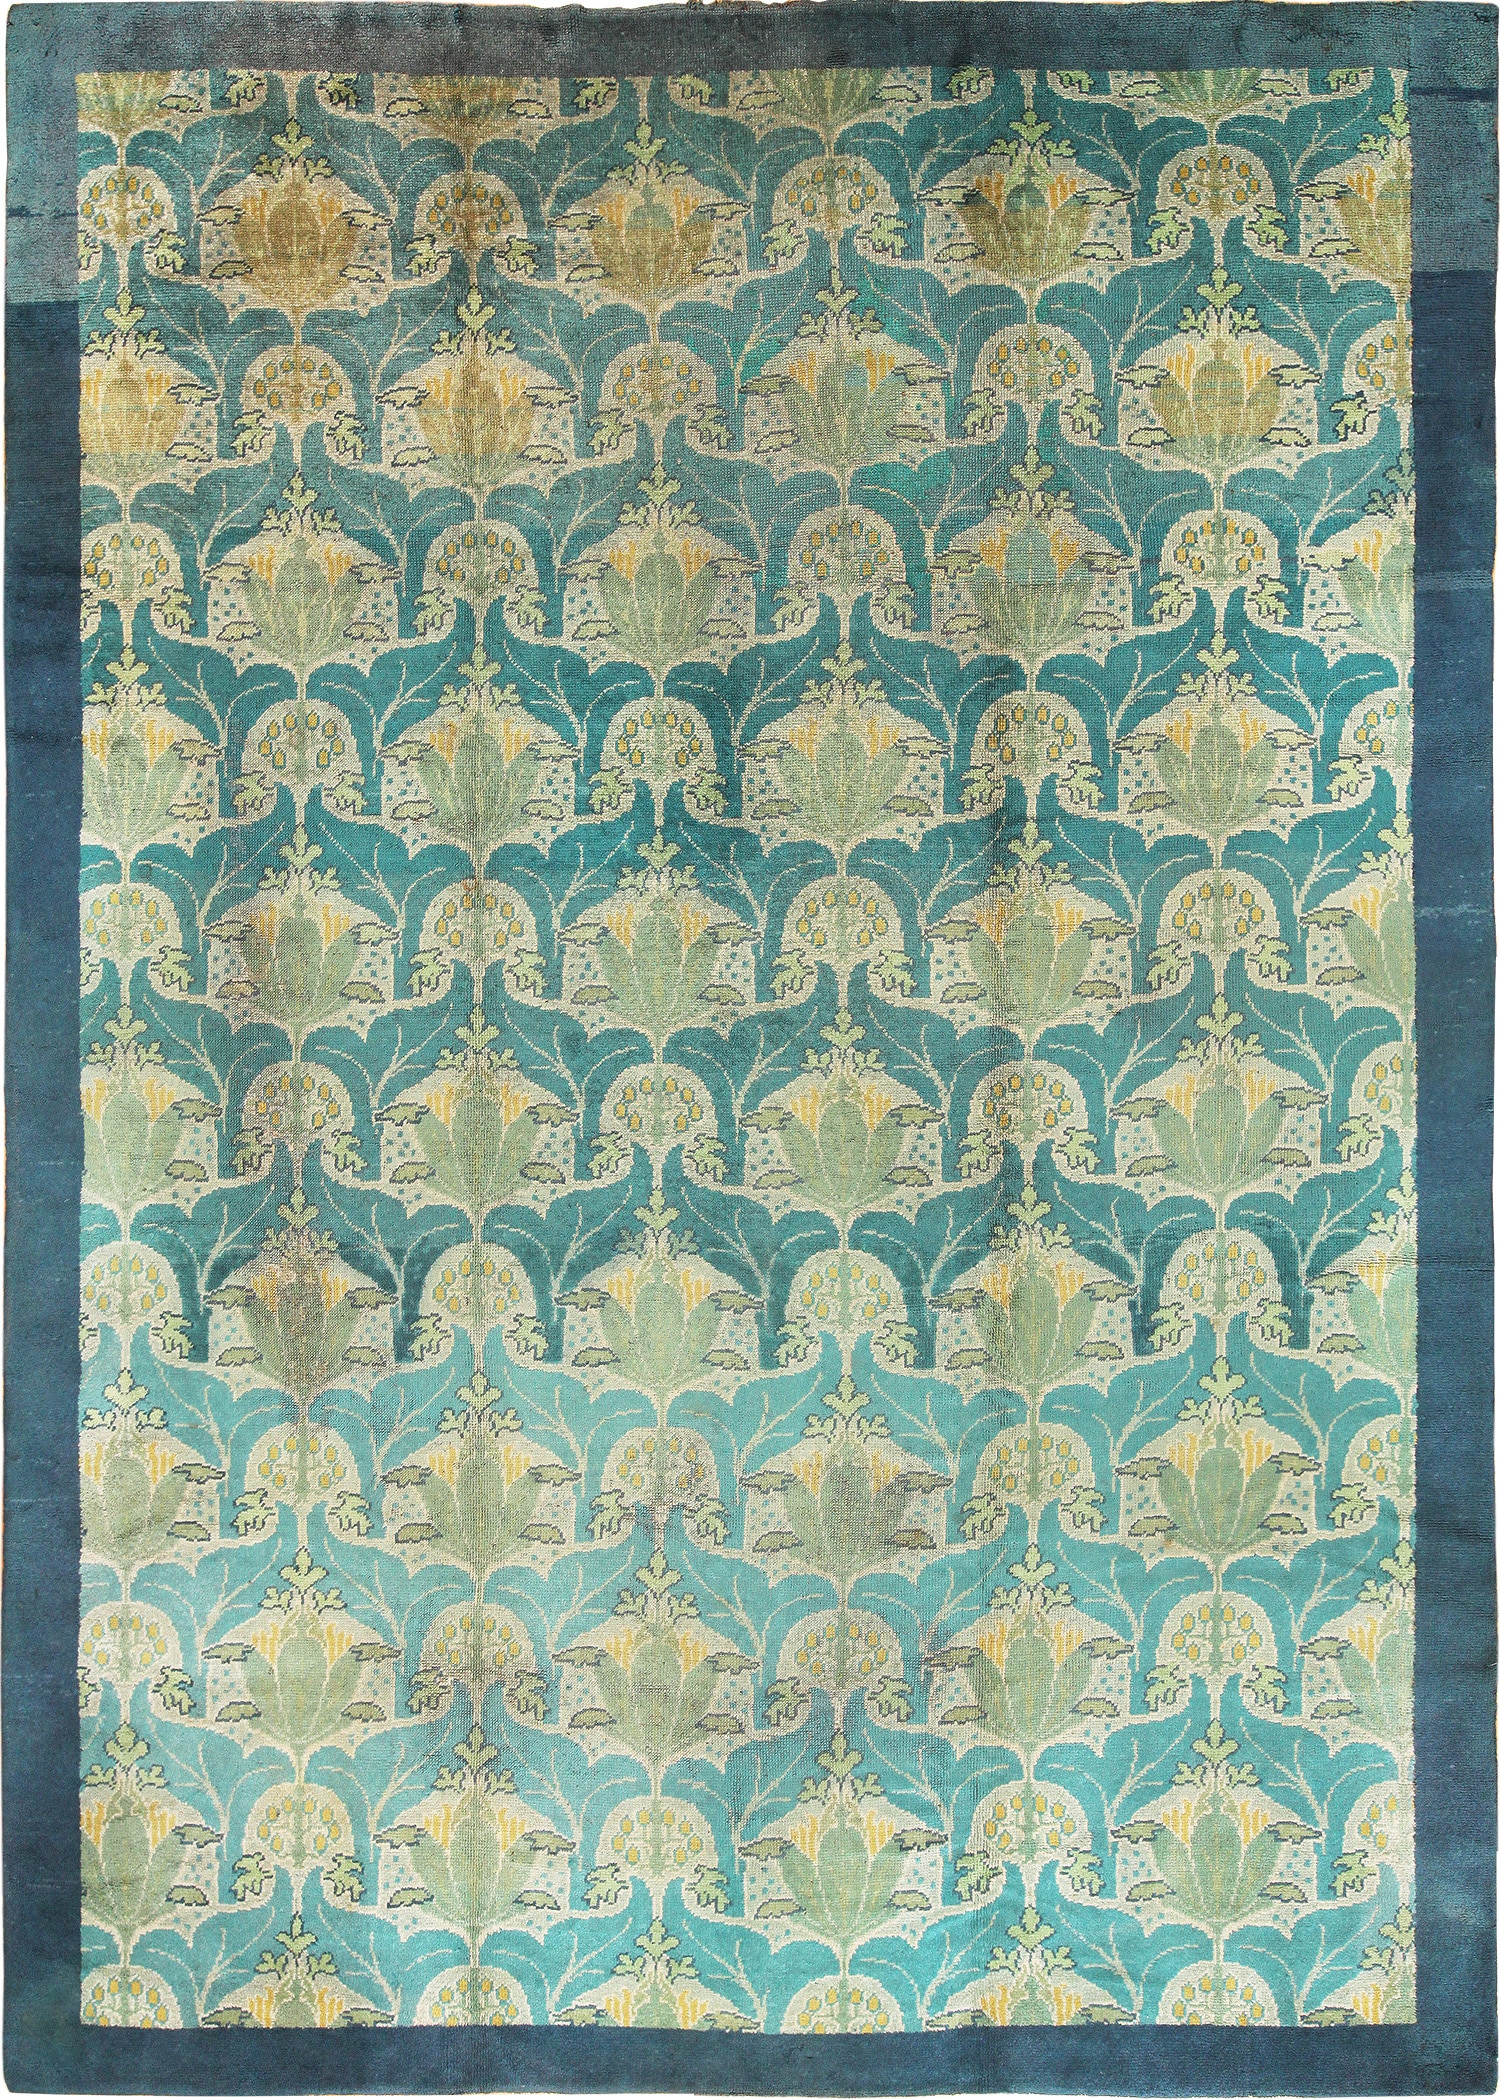 Antique donegal Carpet - # 56513